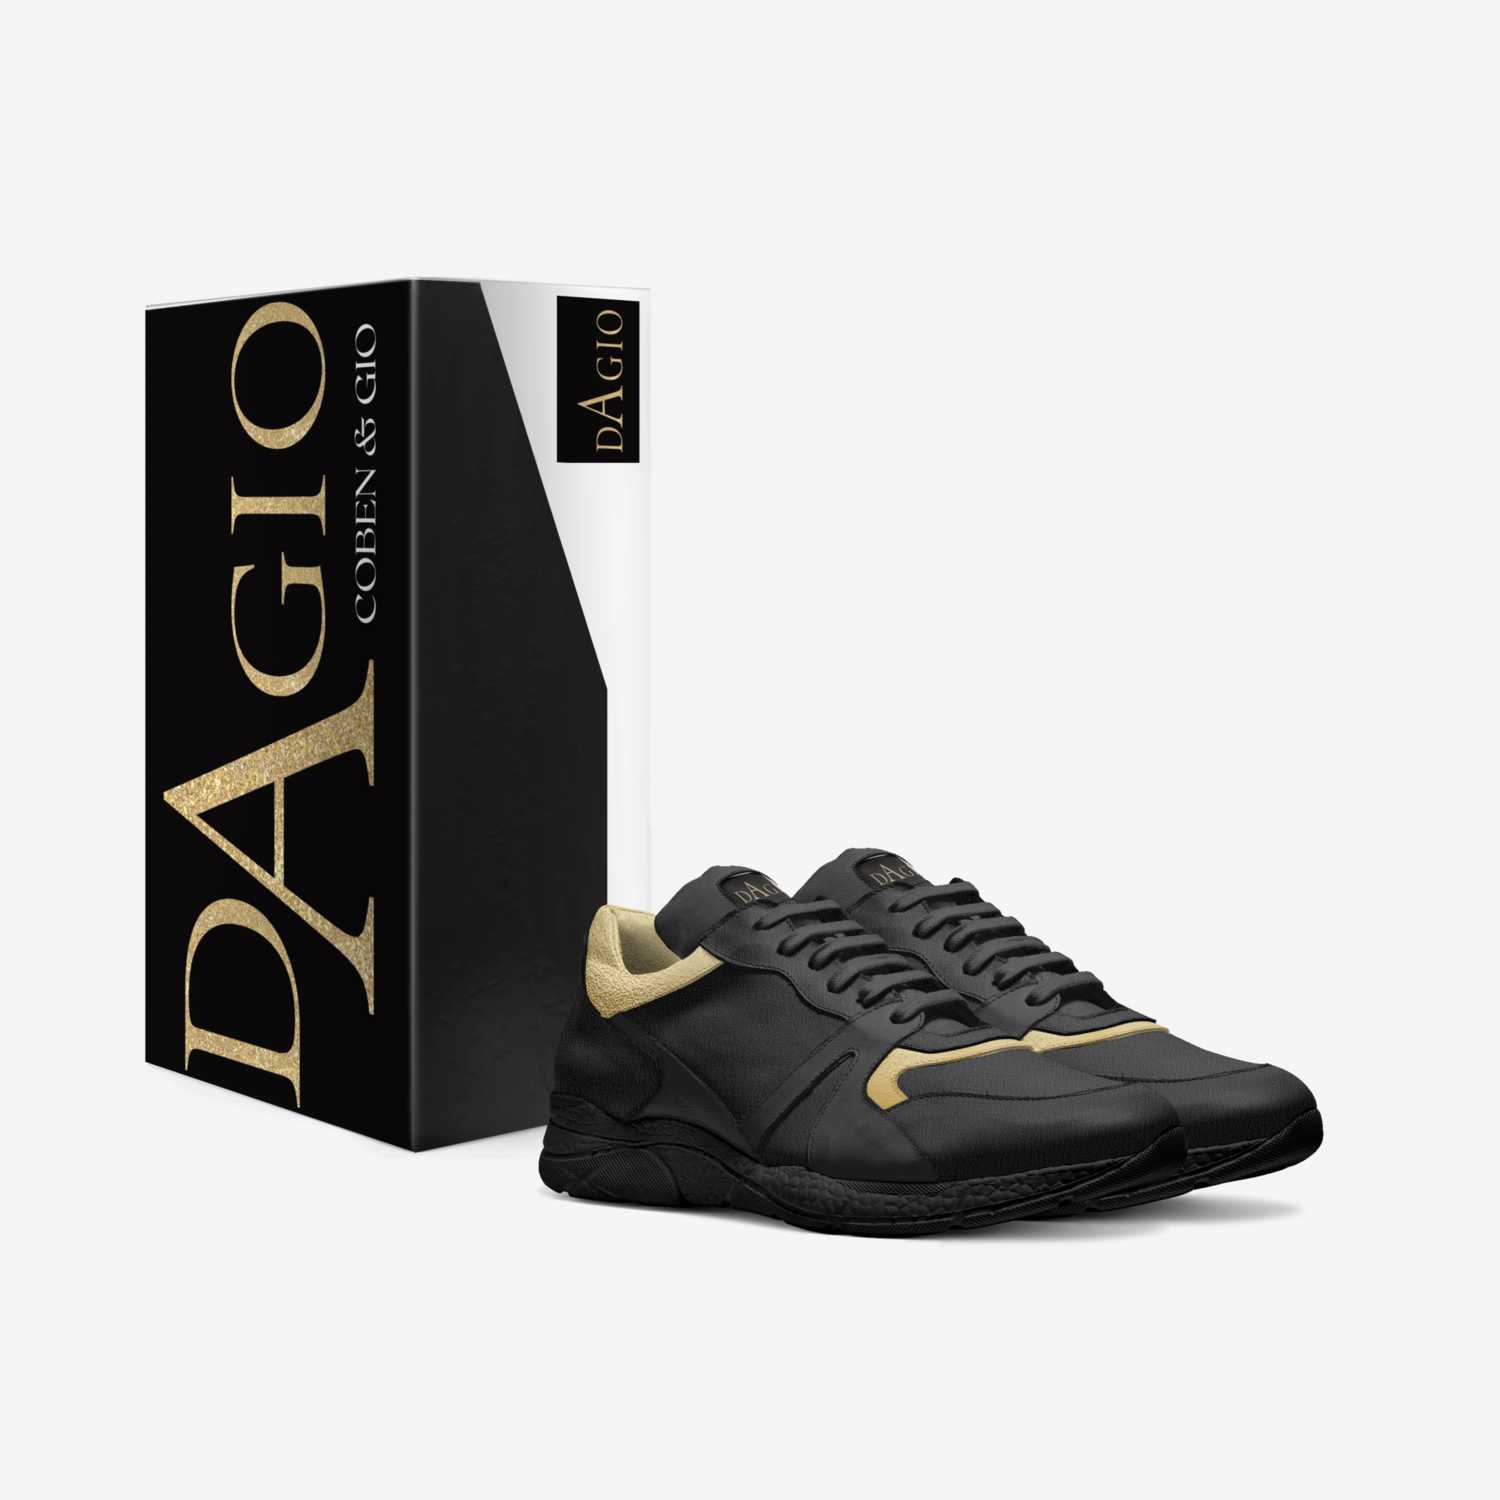 DA GIO  custom made in Italy shoes by Coben&gio Cobenpolo | Box view